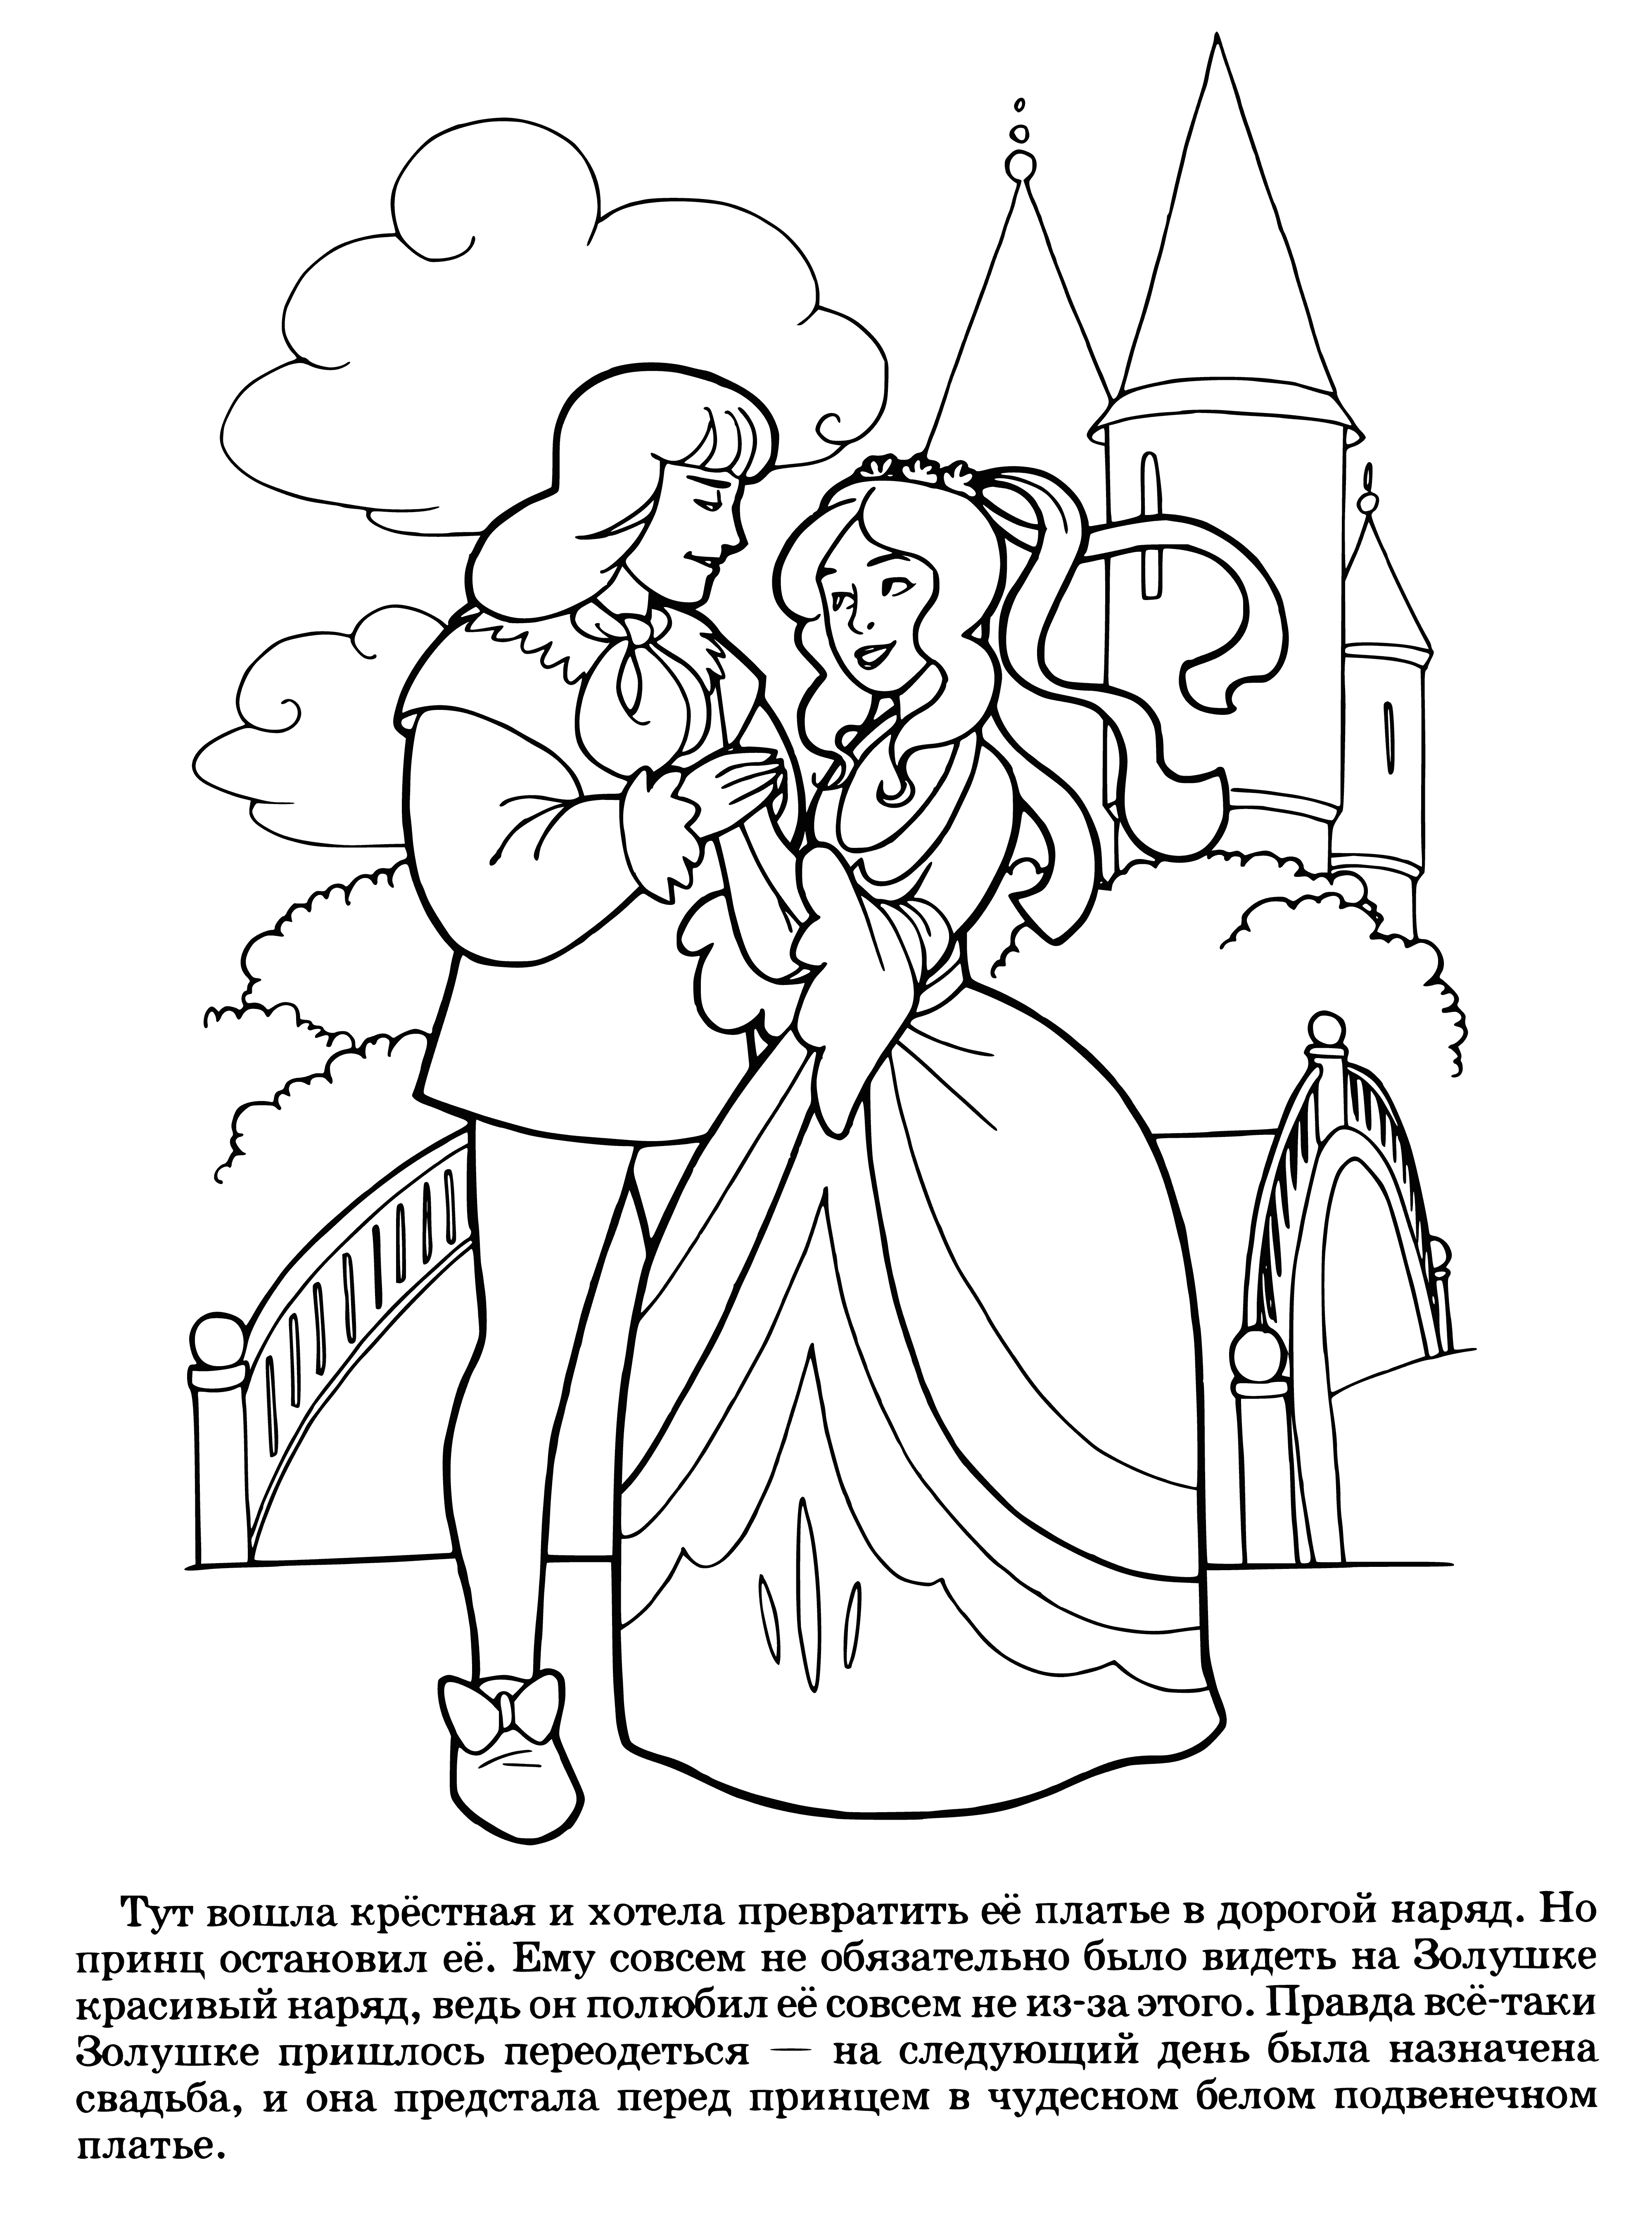 Cinderella's wedding coloring page